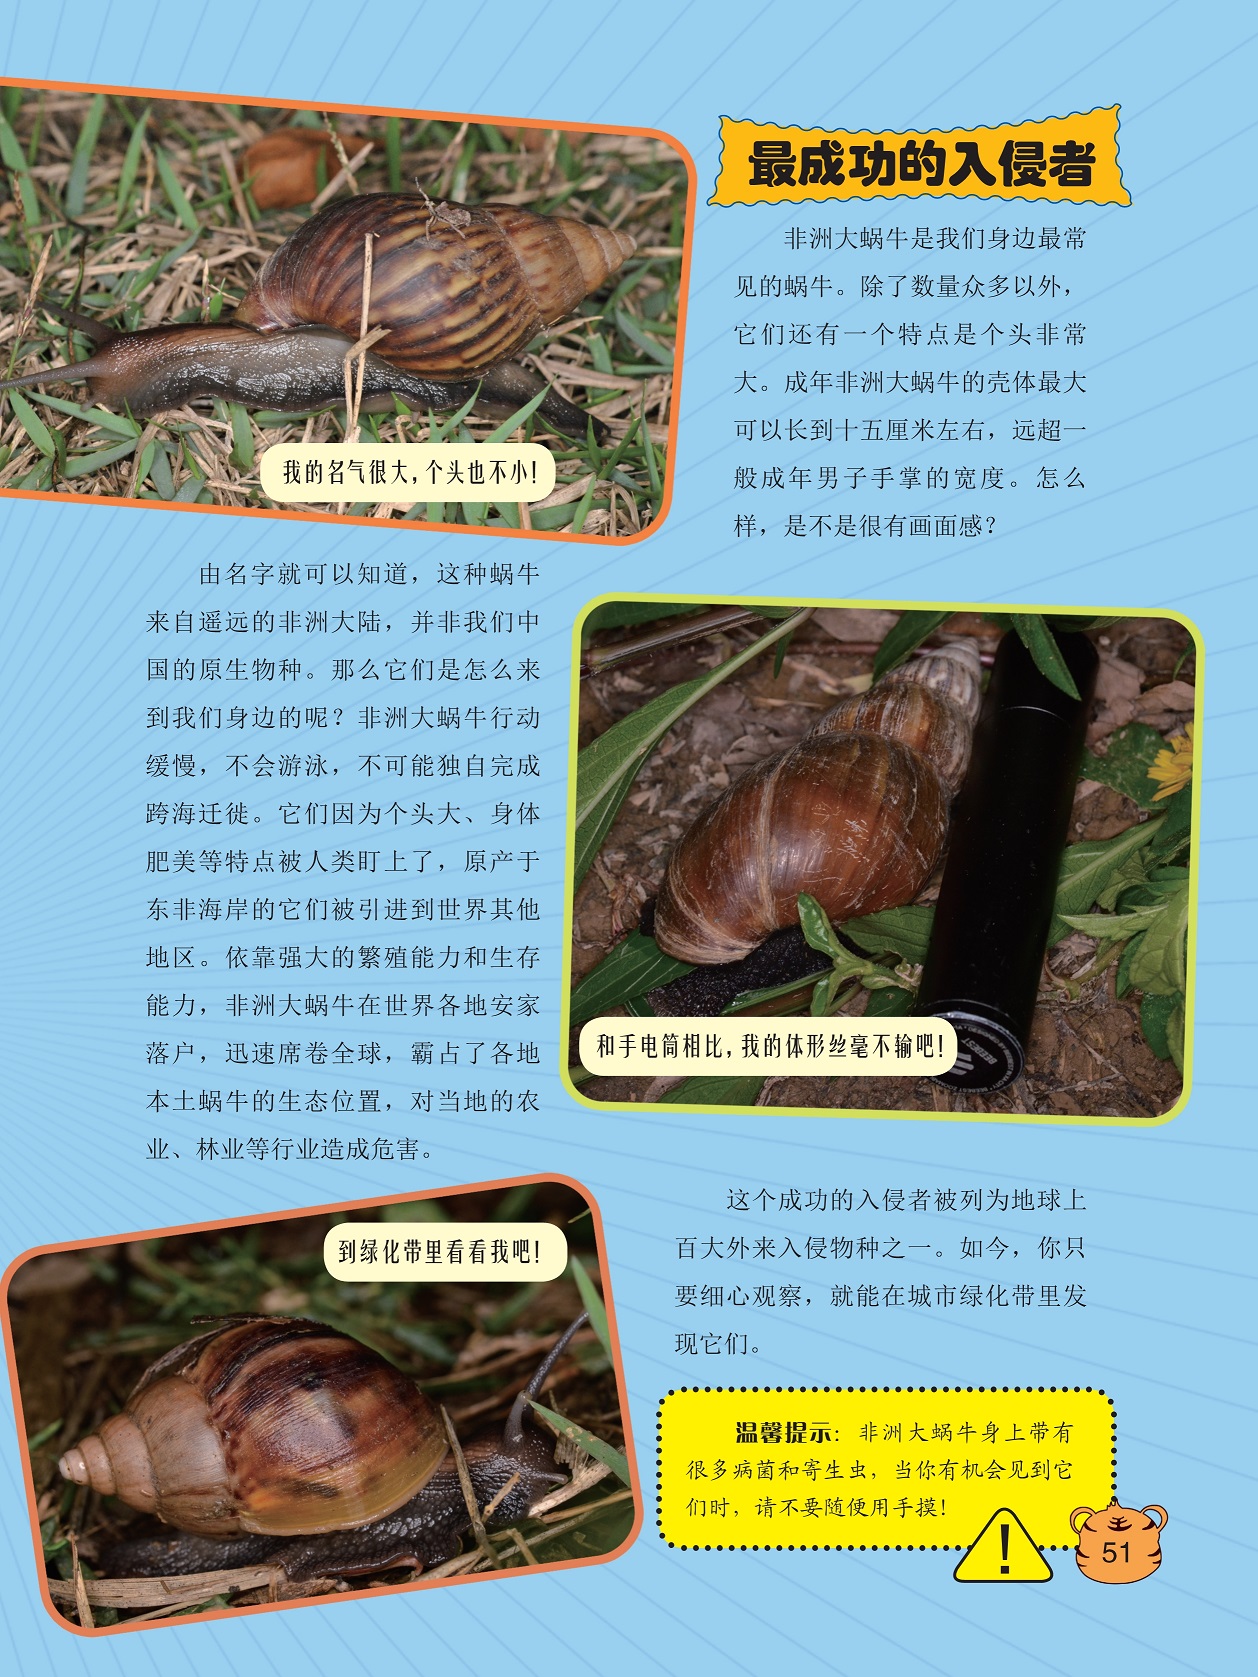 最成功的入侵者,非洲大蜗牛在世界各地安家